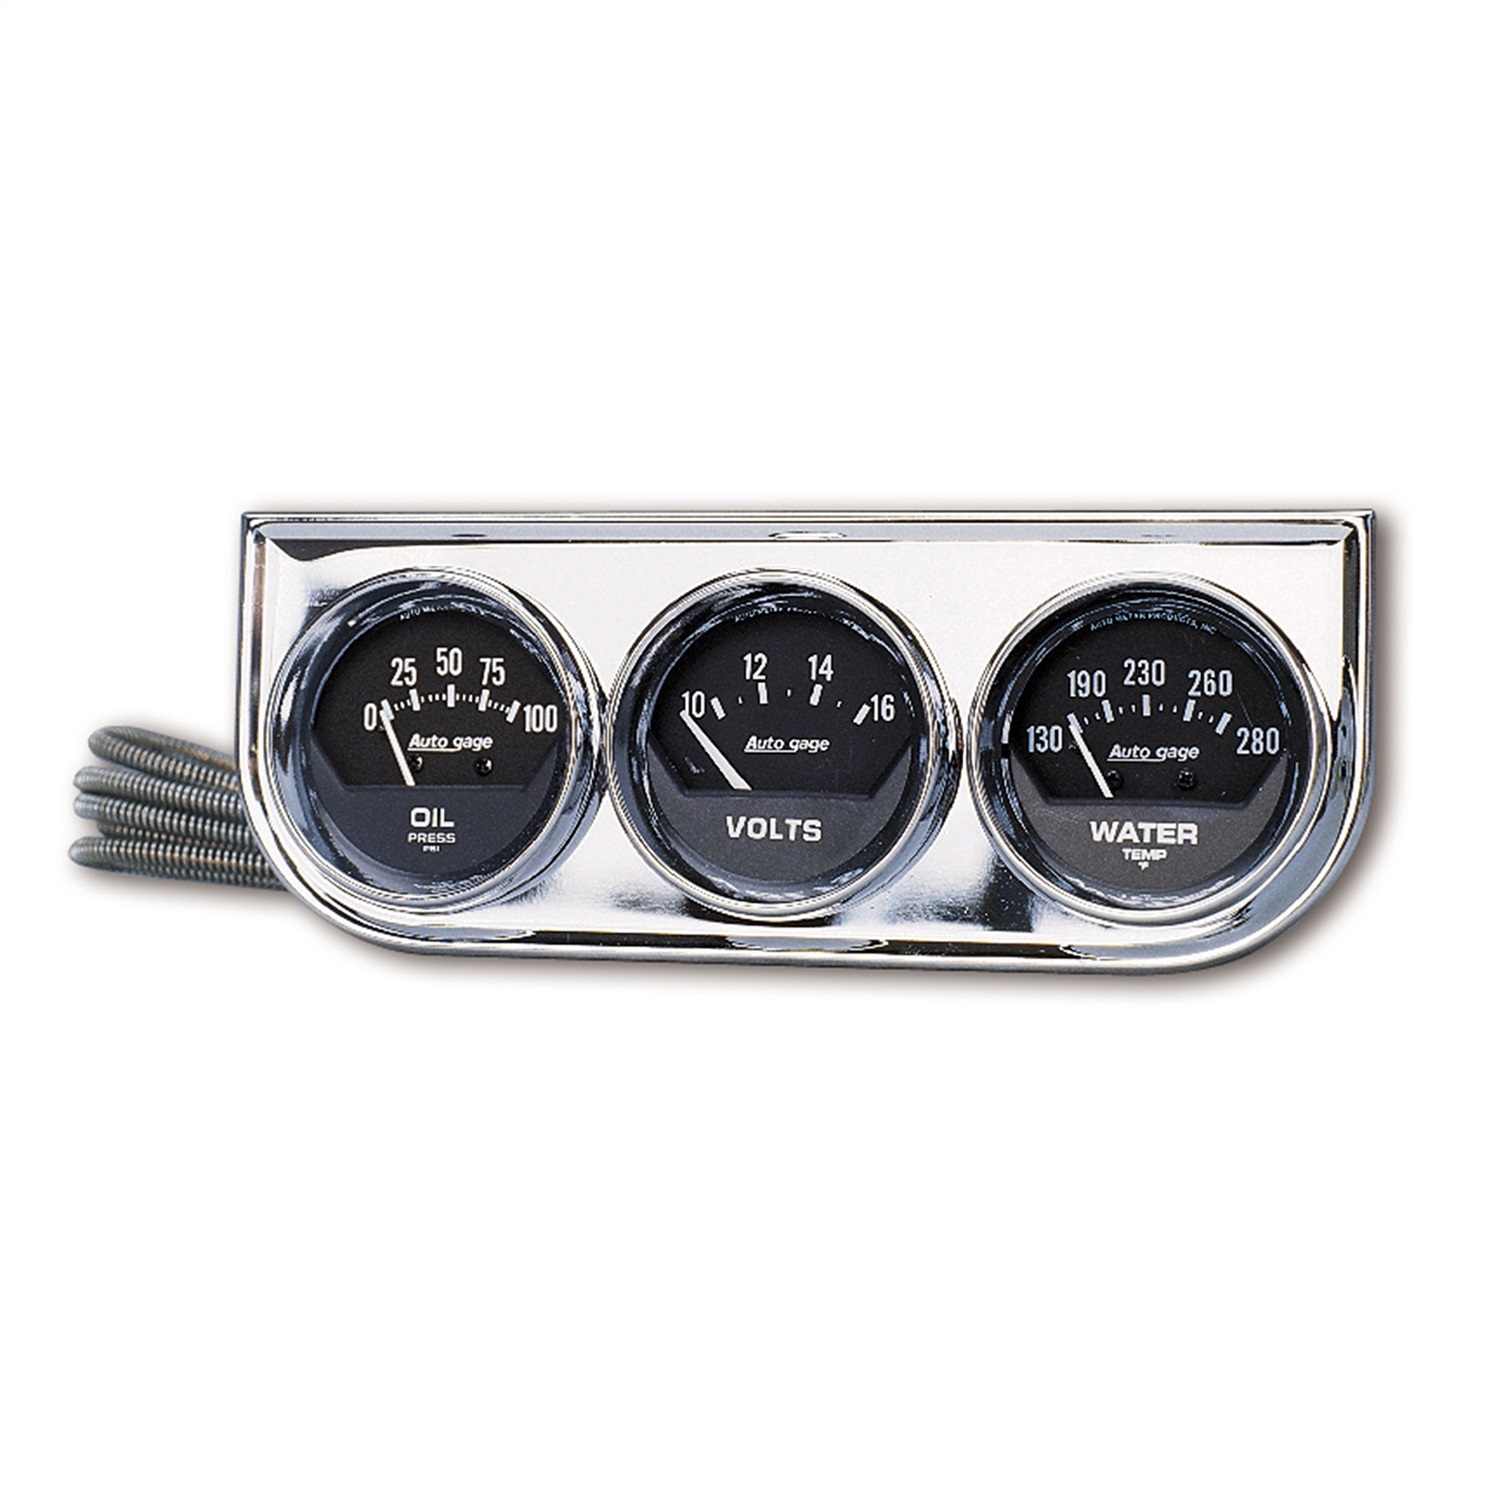 Auto Meter Auto Meter 2349 Autogage; Black Oil/Water/Volt; Chrome Console